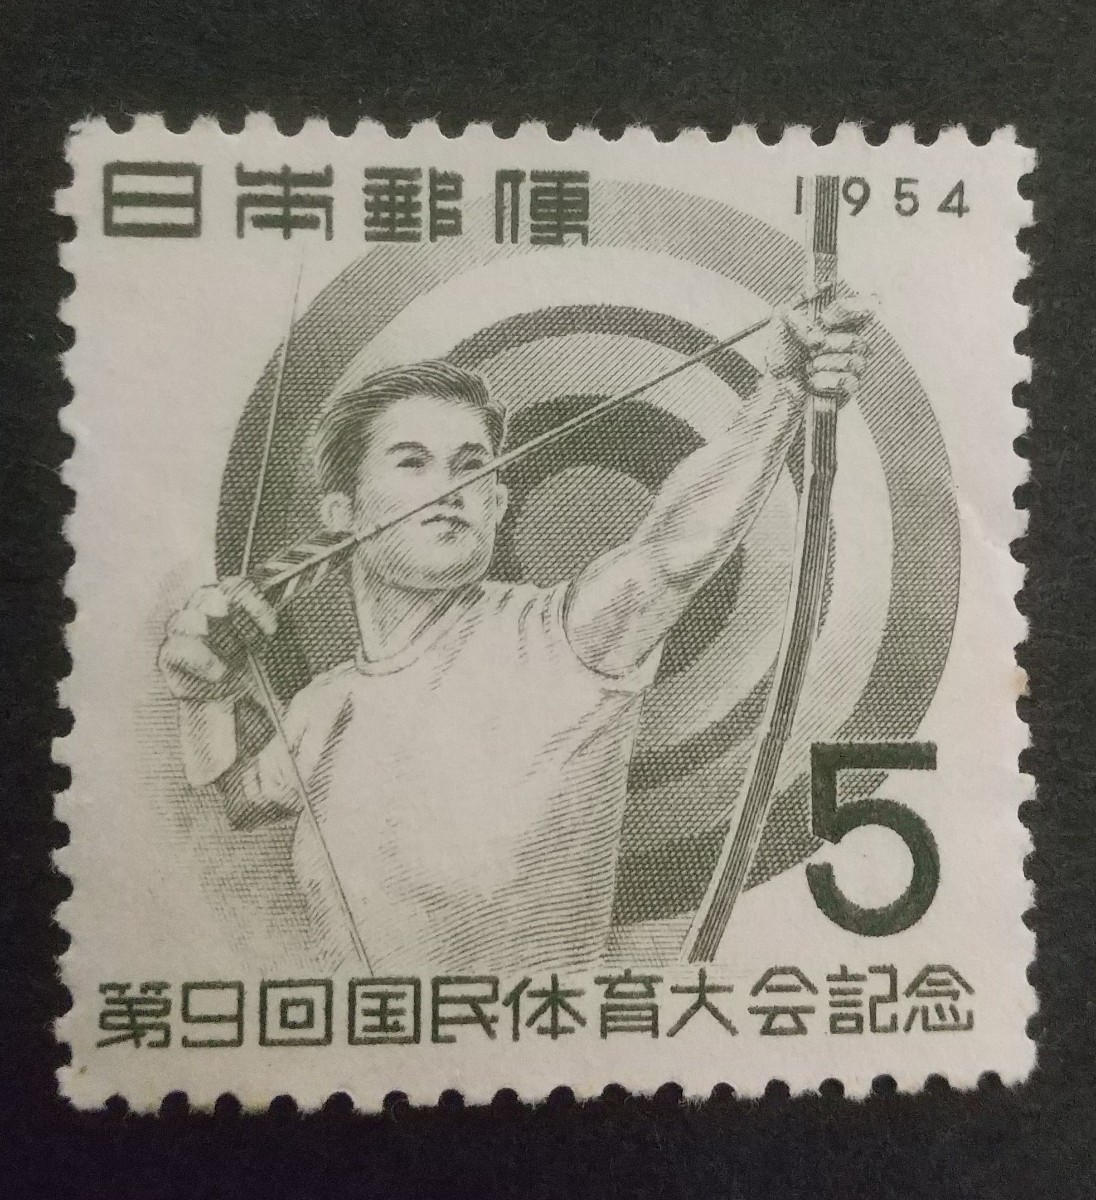 記念切手 第9回国民体育大会記念 弓道 1954 未使用品 (ST-73)_画像1